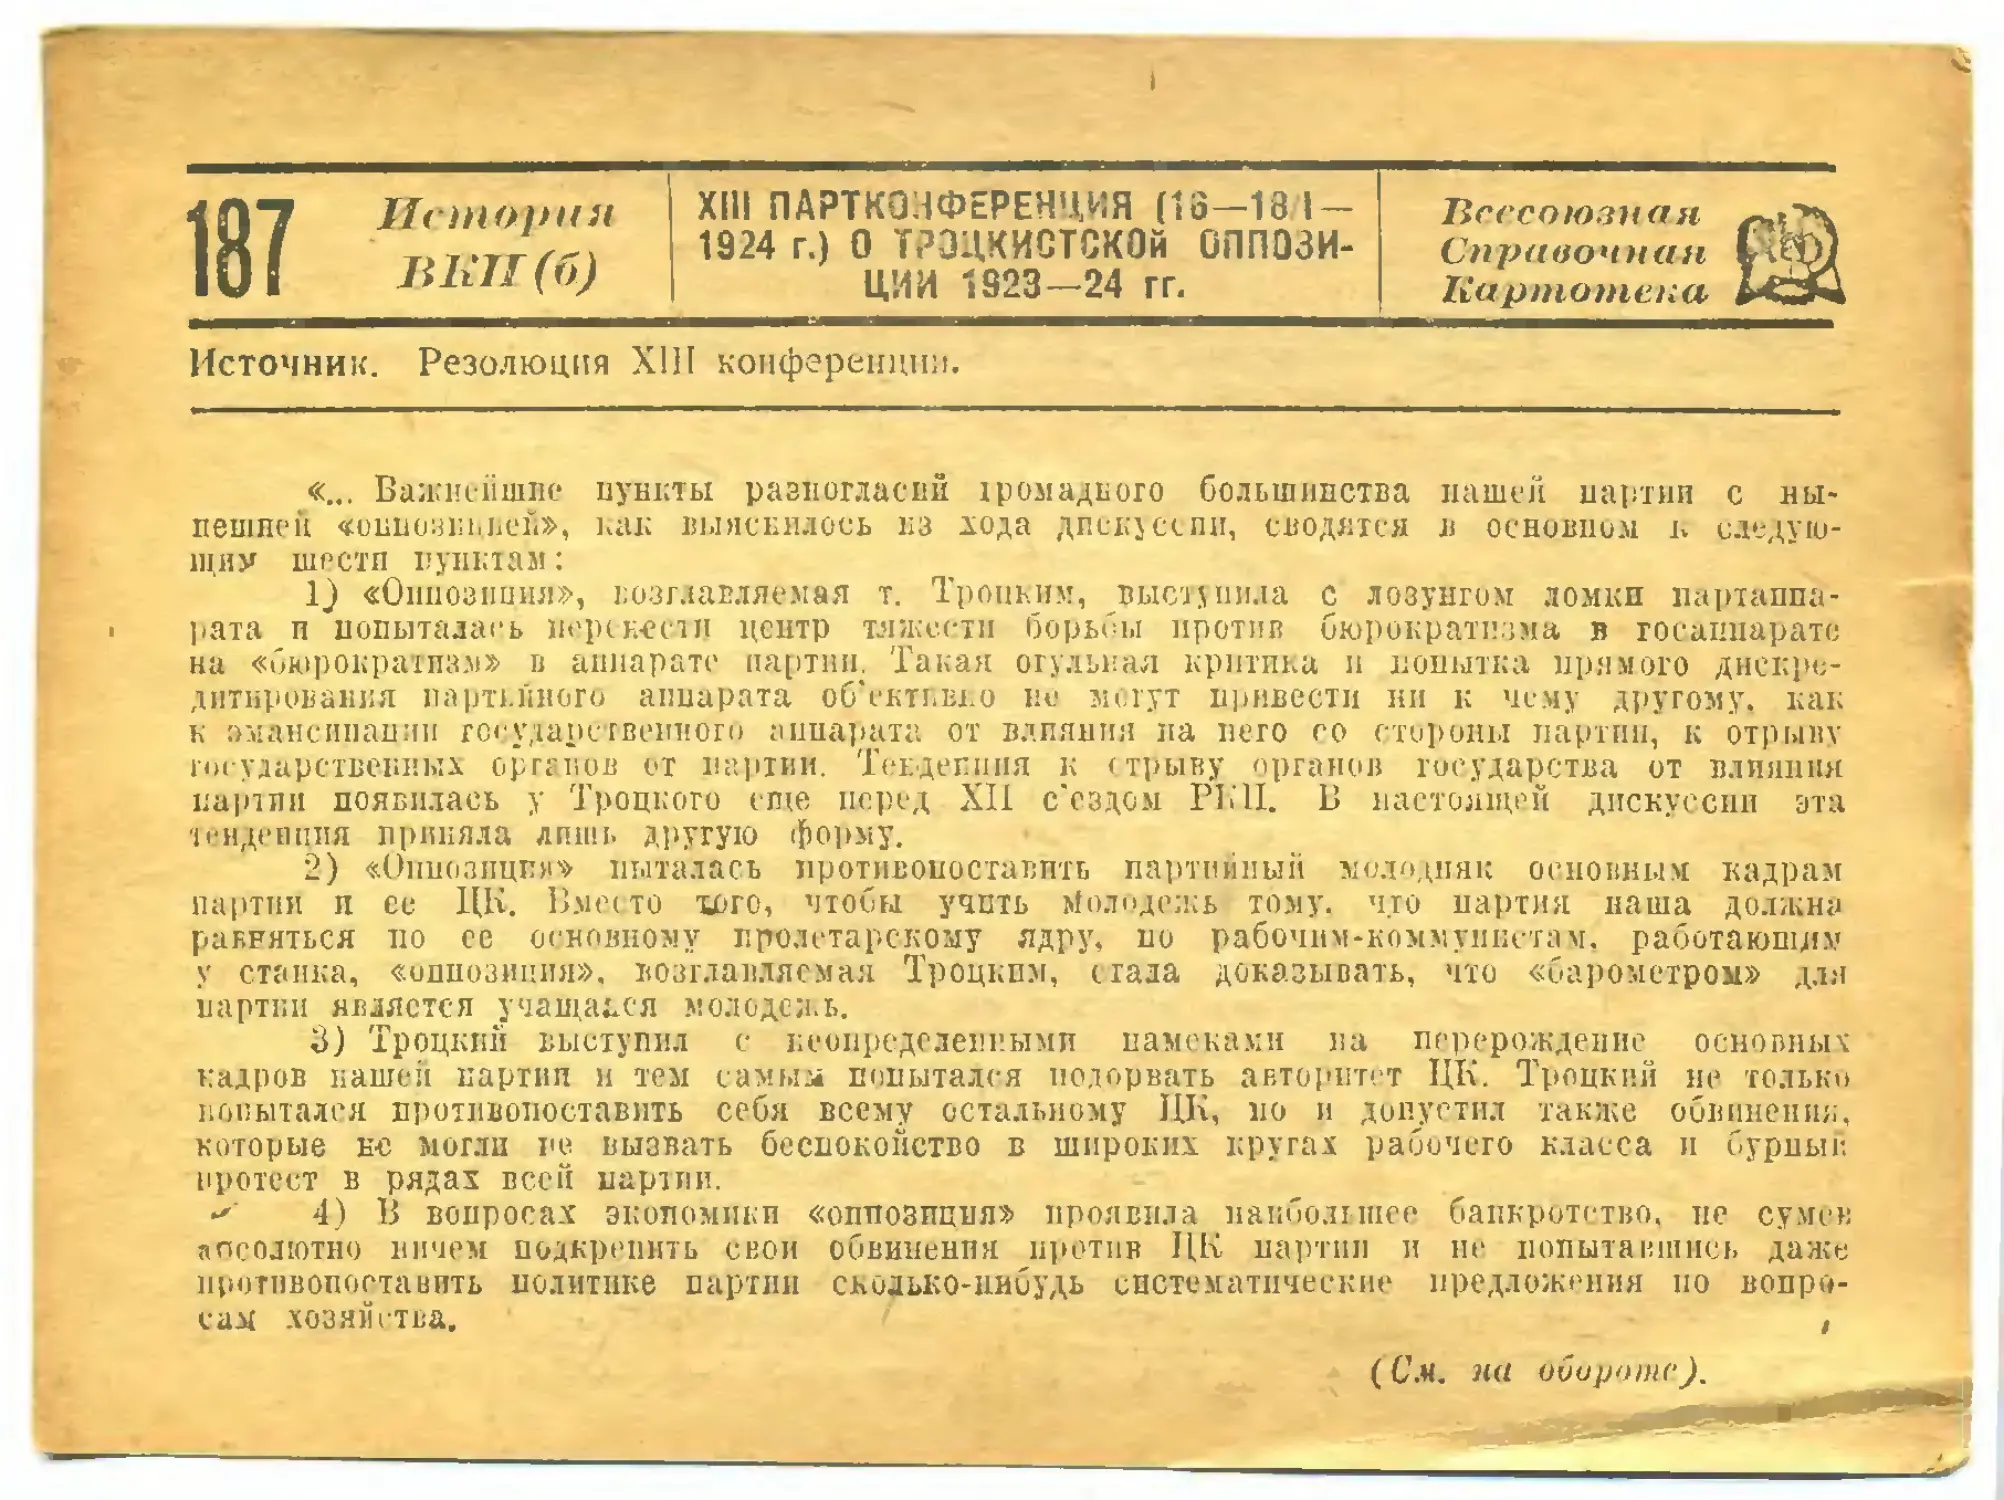 187. XIII партконференция о троцкистской оппозиции 1923—1924 гг.